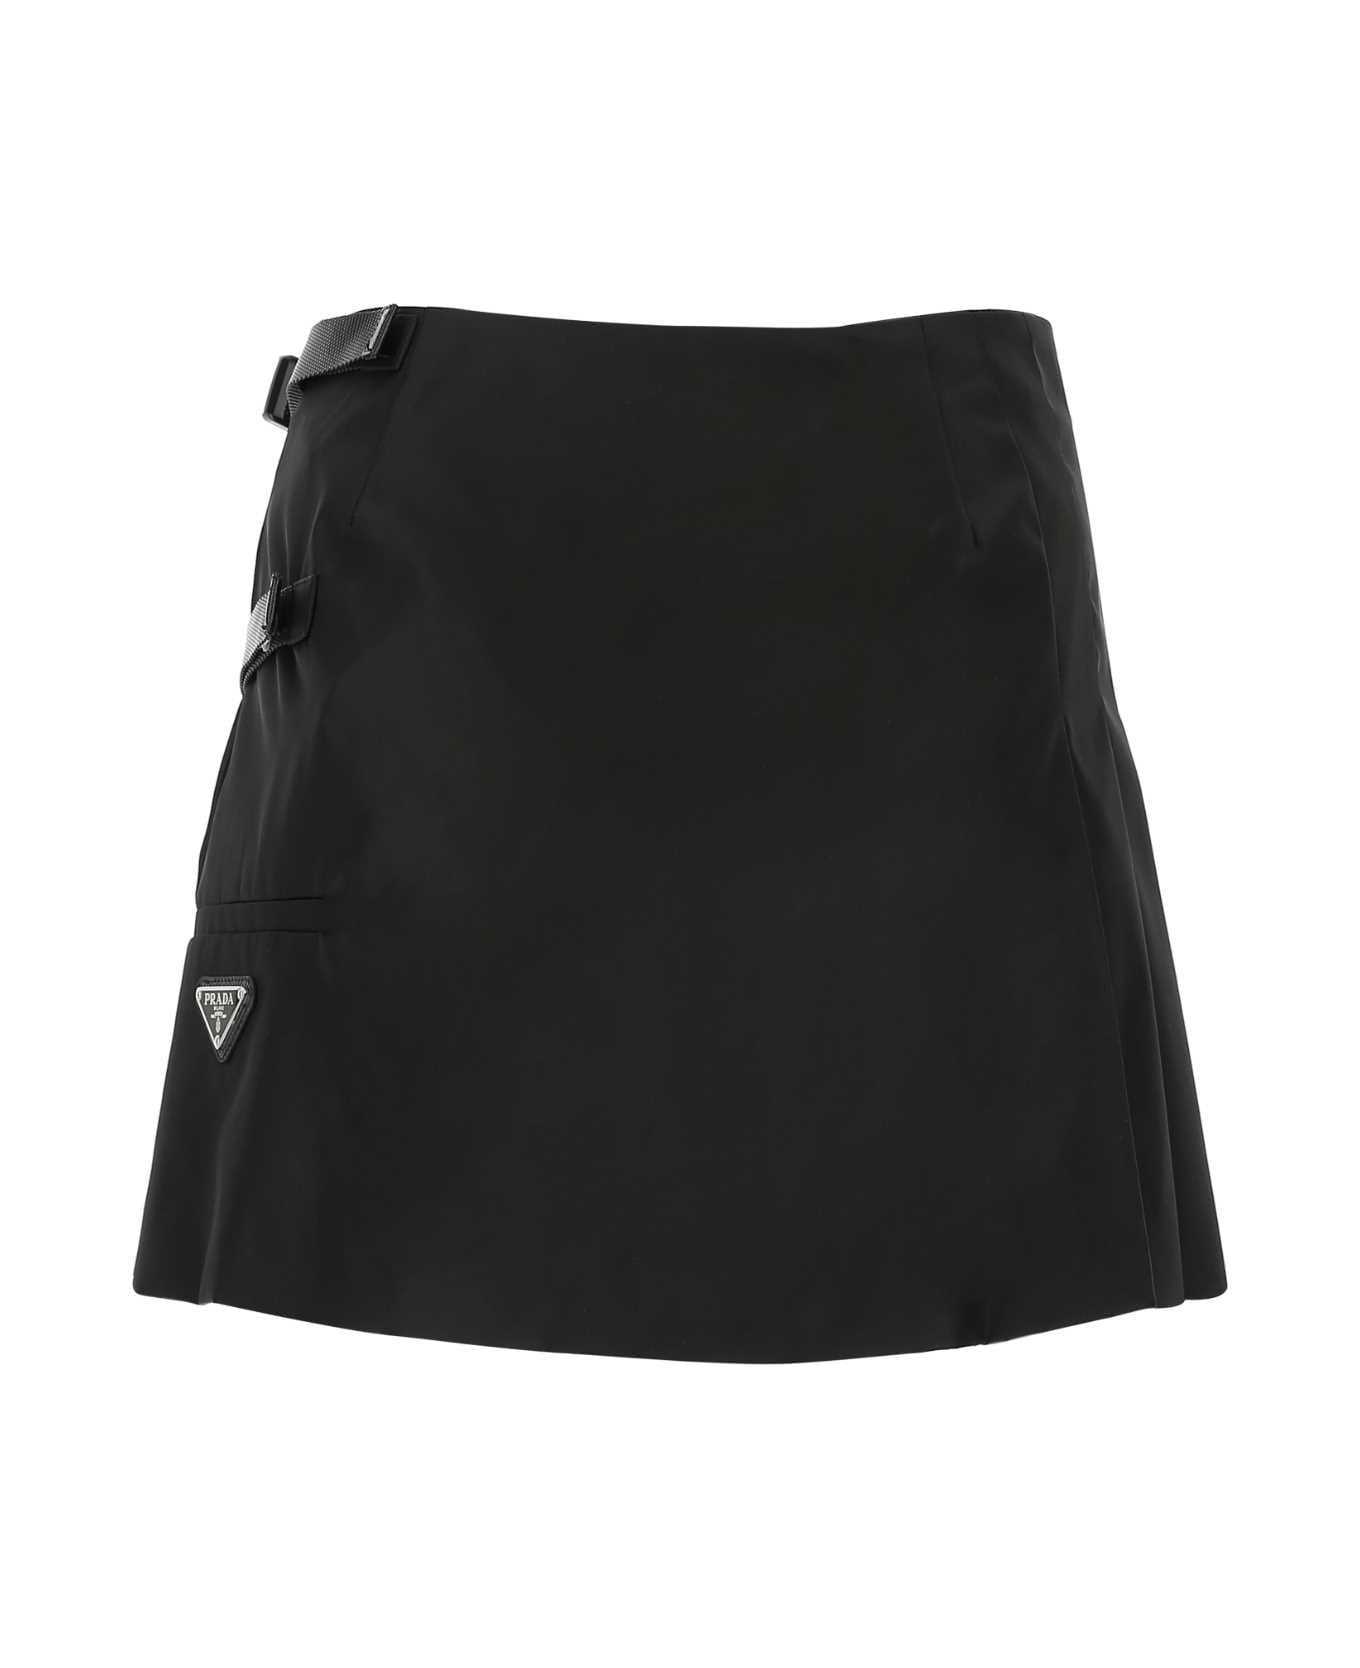 Prada Black Nylon Mini Skirt - F0002